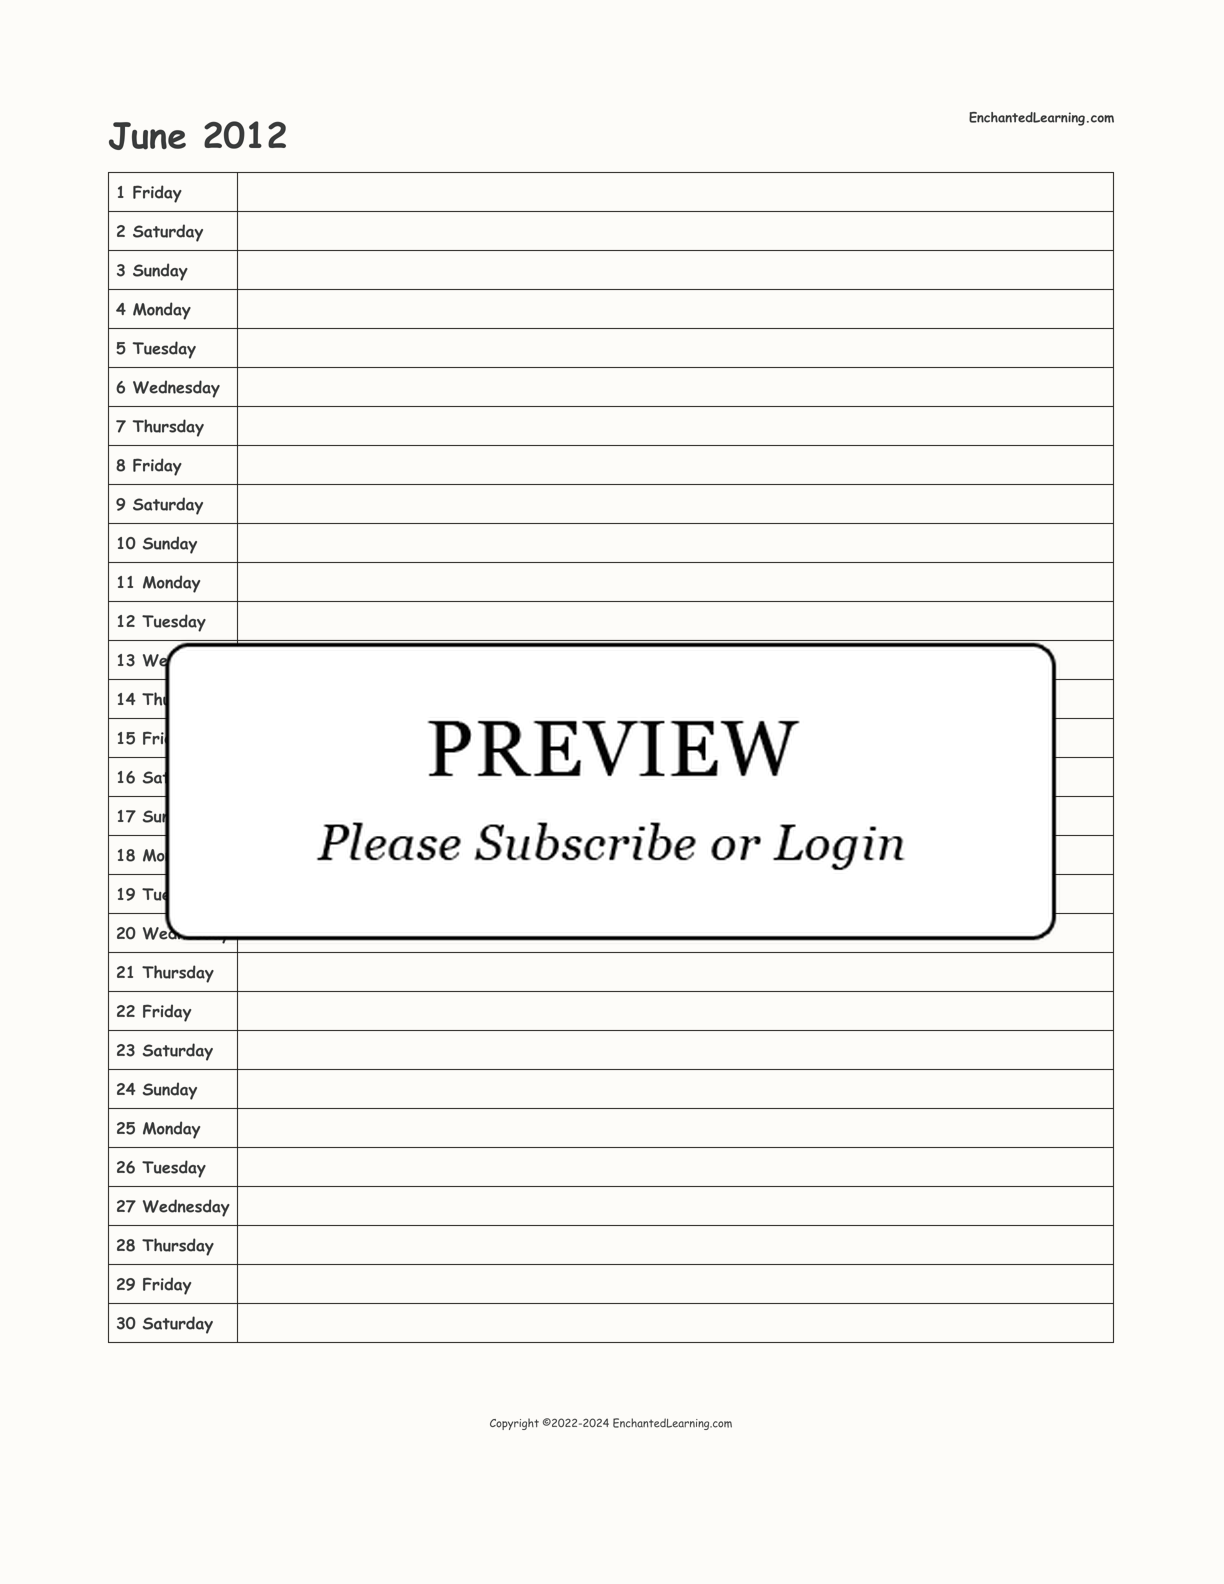 June 2012 Calendar interactive printout page 1